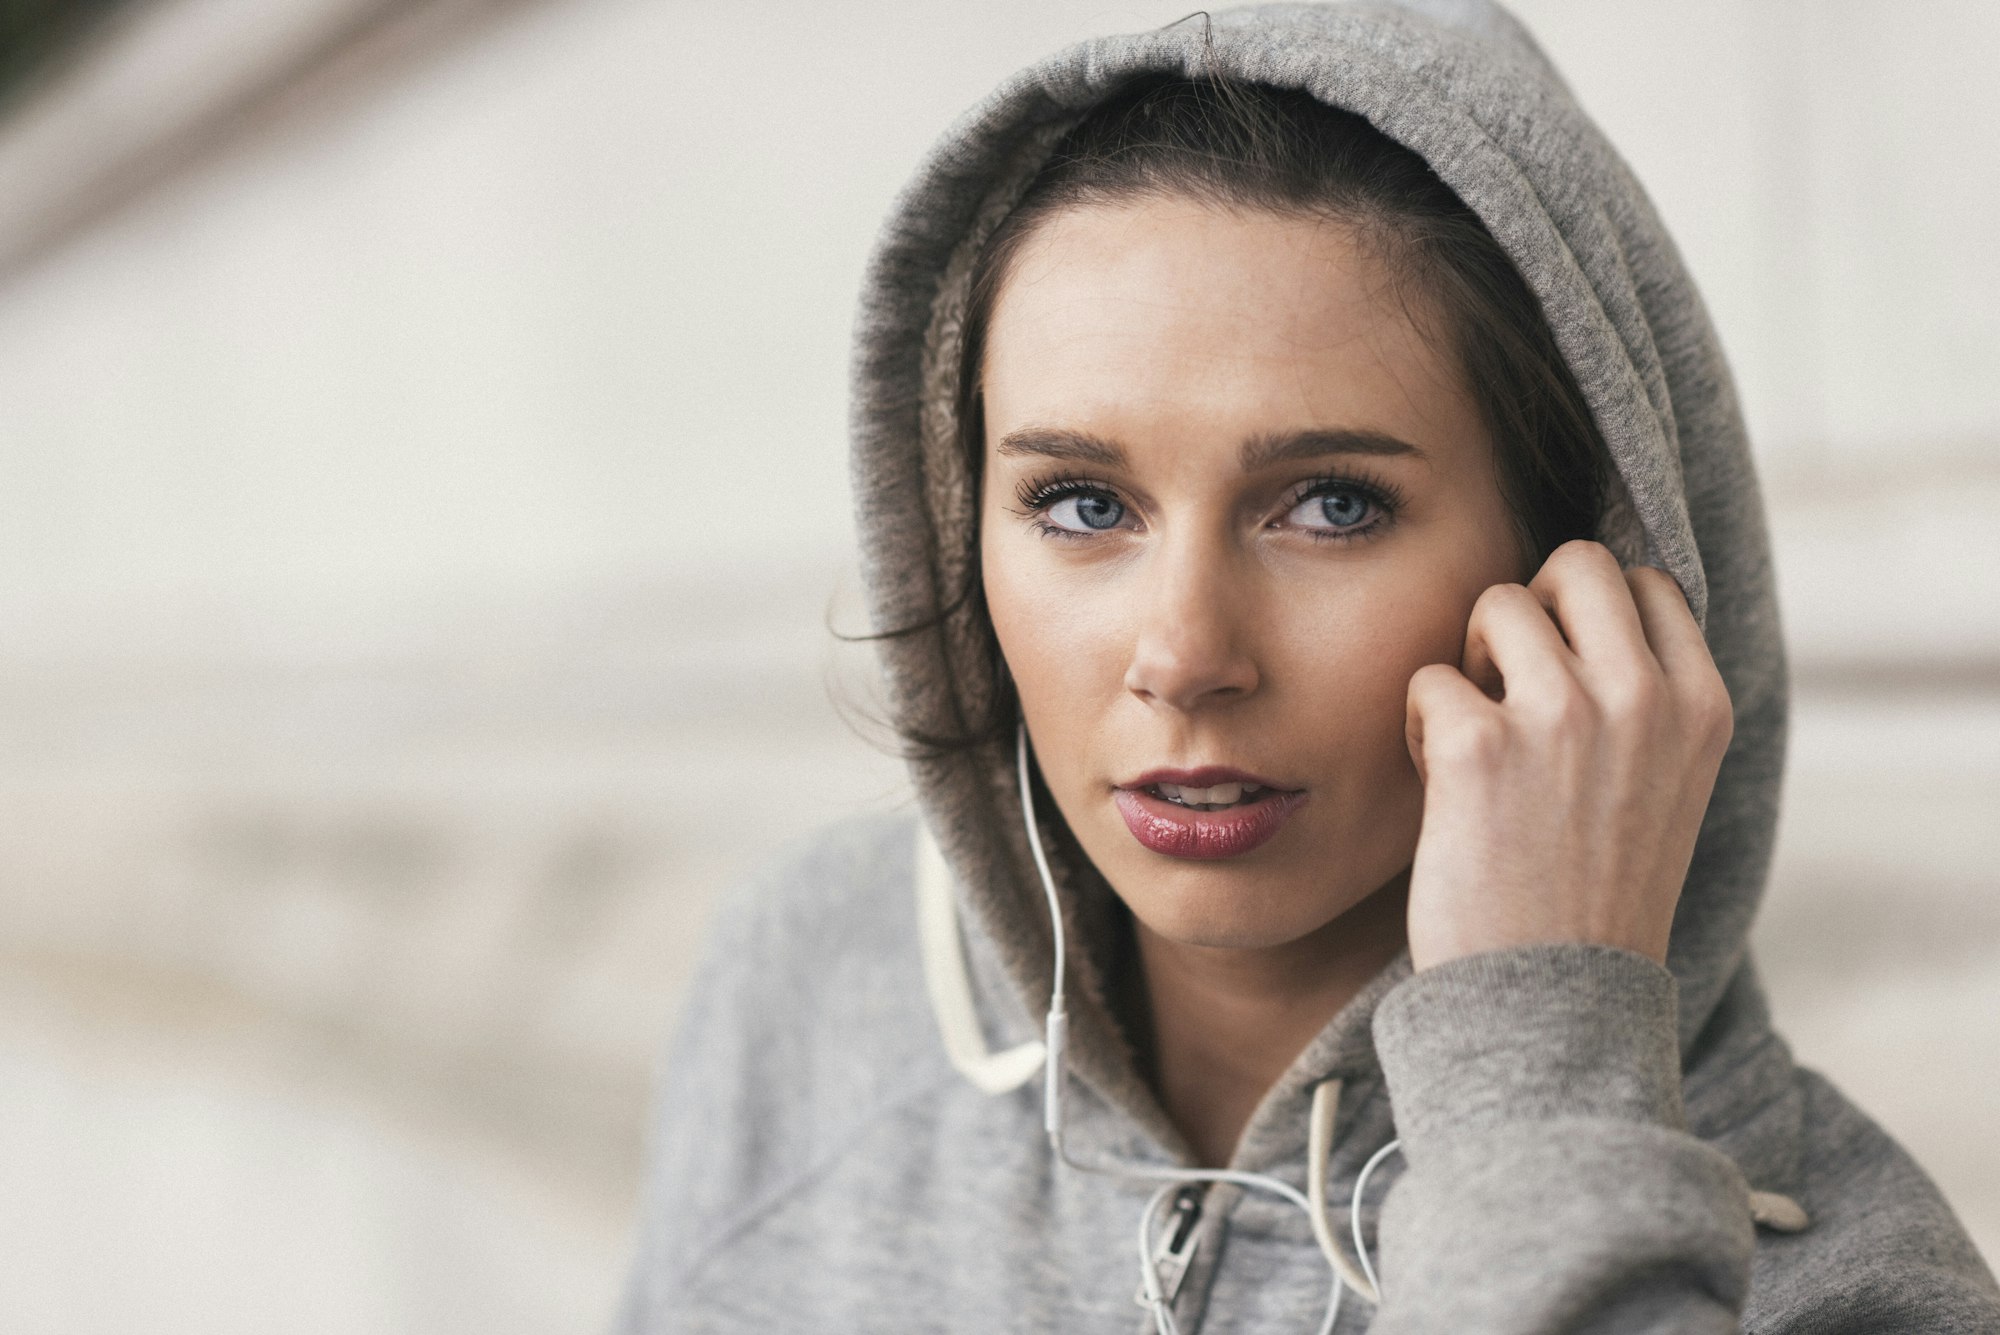 Female runner wearing grey hoody listening to music on earphones